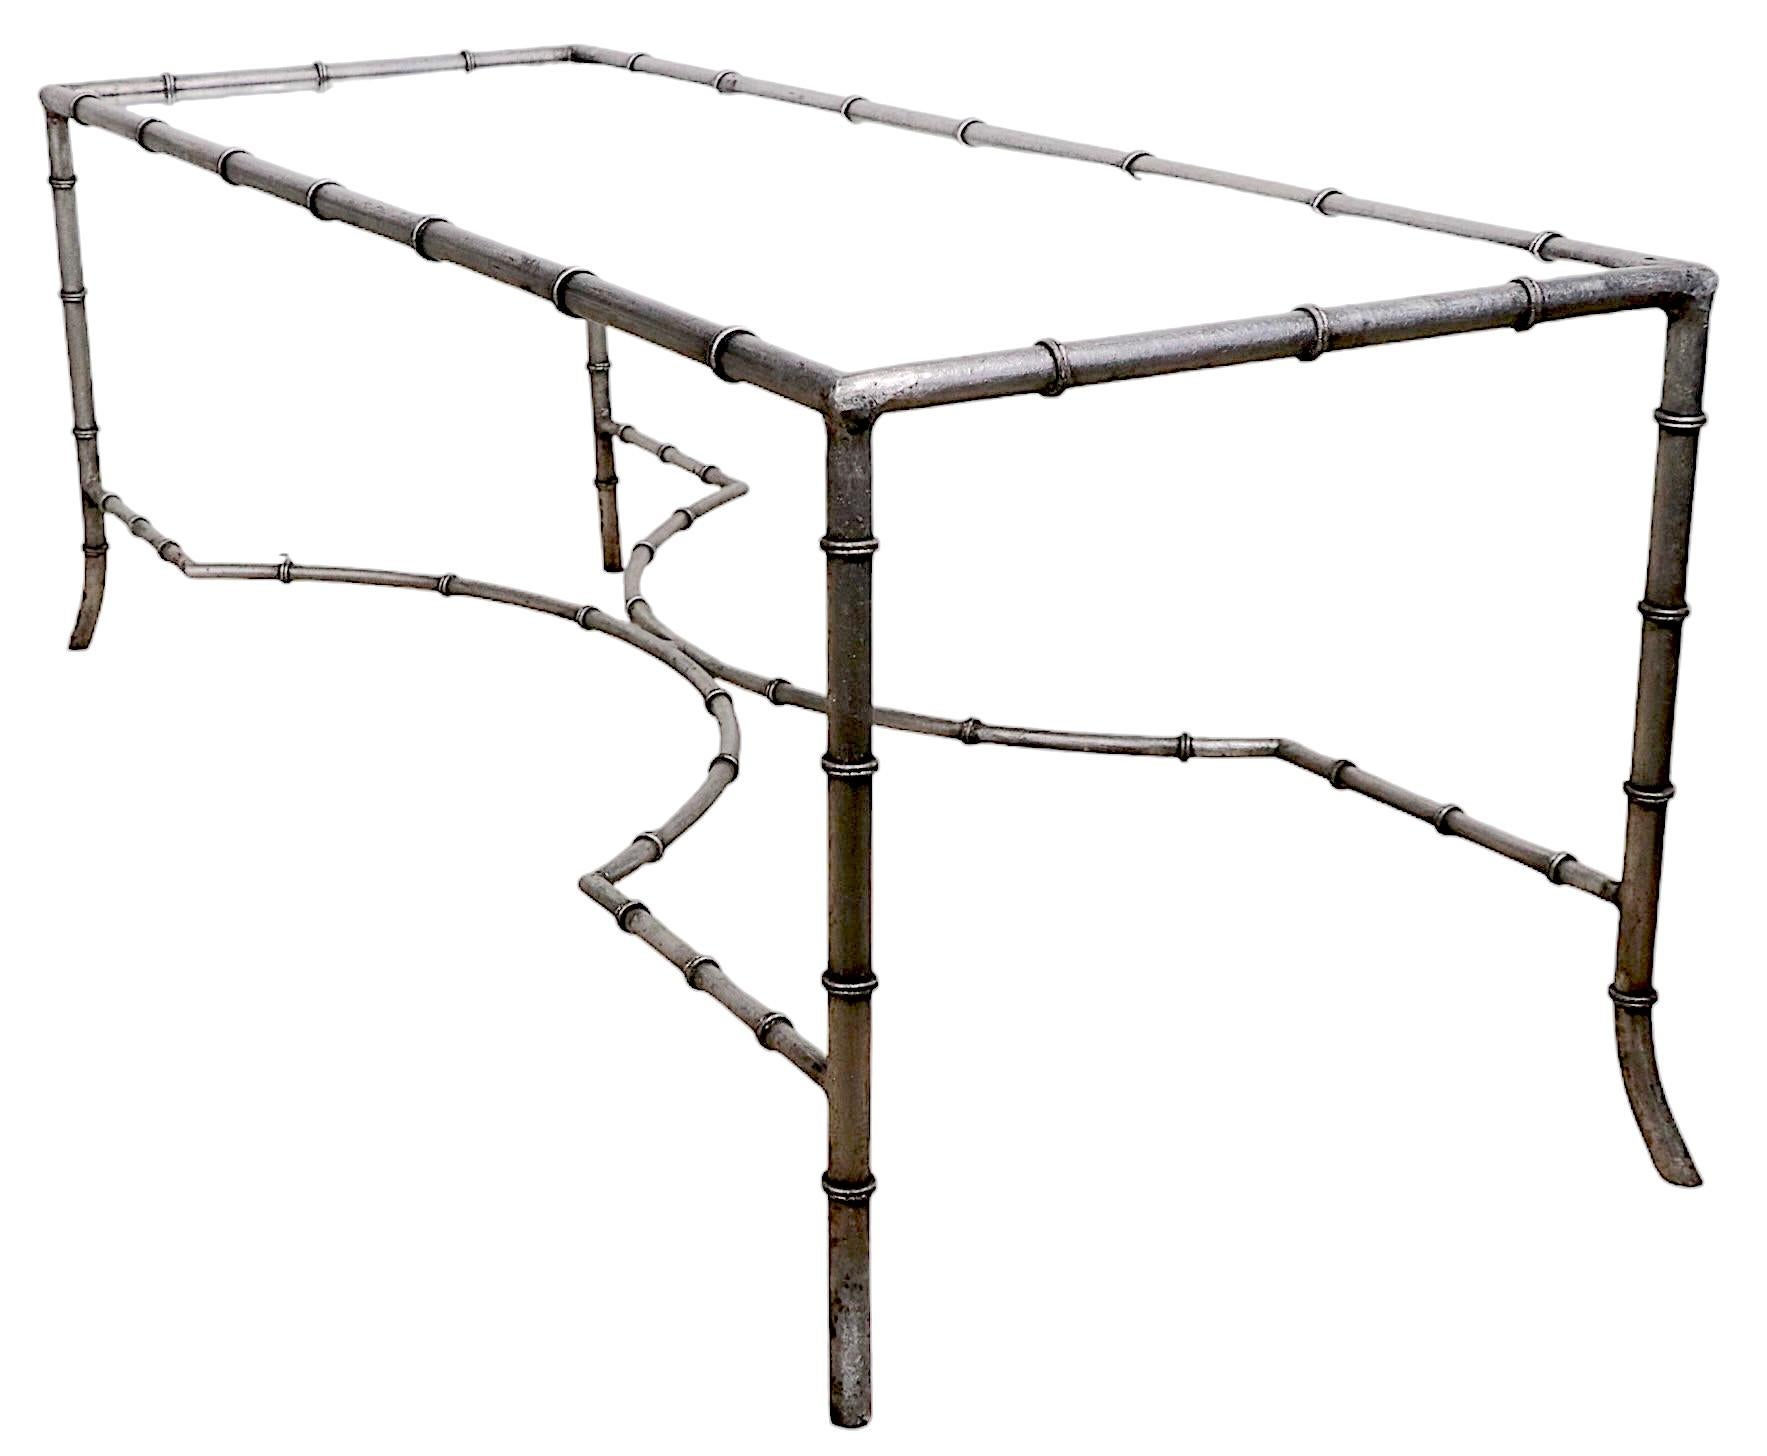 Table basse chic, sophistiquée et vogue, en vermeil et faux bambou, datant des années 1950-70, probablement fabriquée en France.  Italie. La table est en très bon état, propre, prête à l'emploi et ne présente qu'une légère usure cosmétique, normale